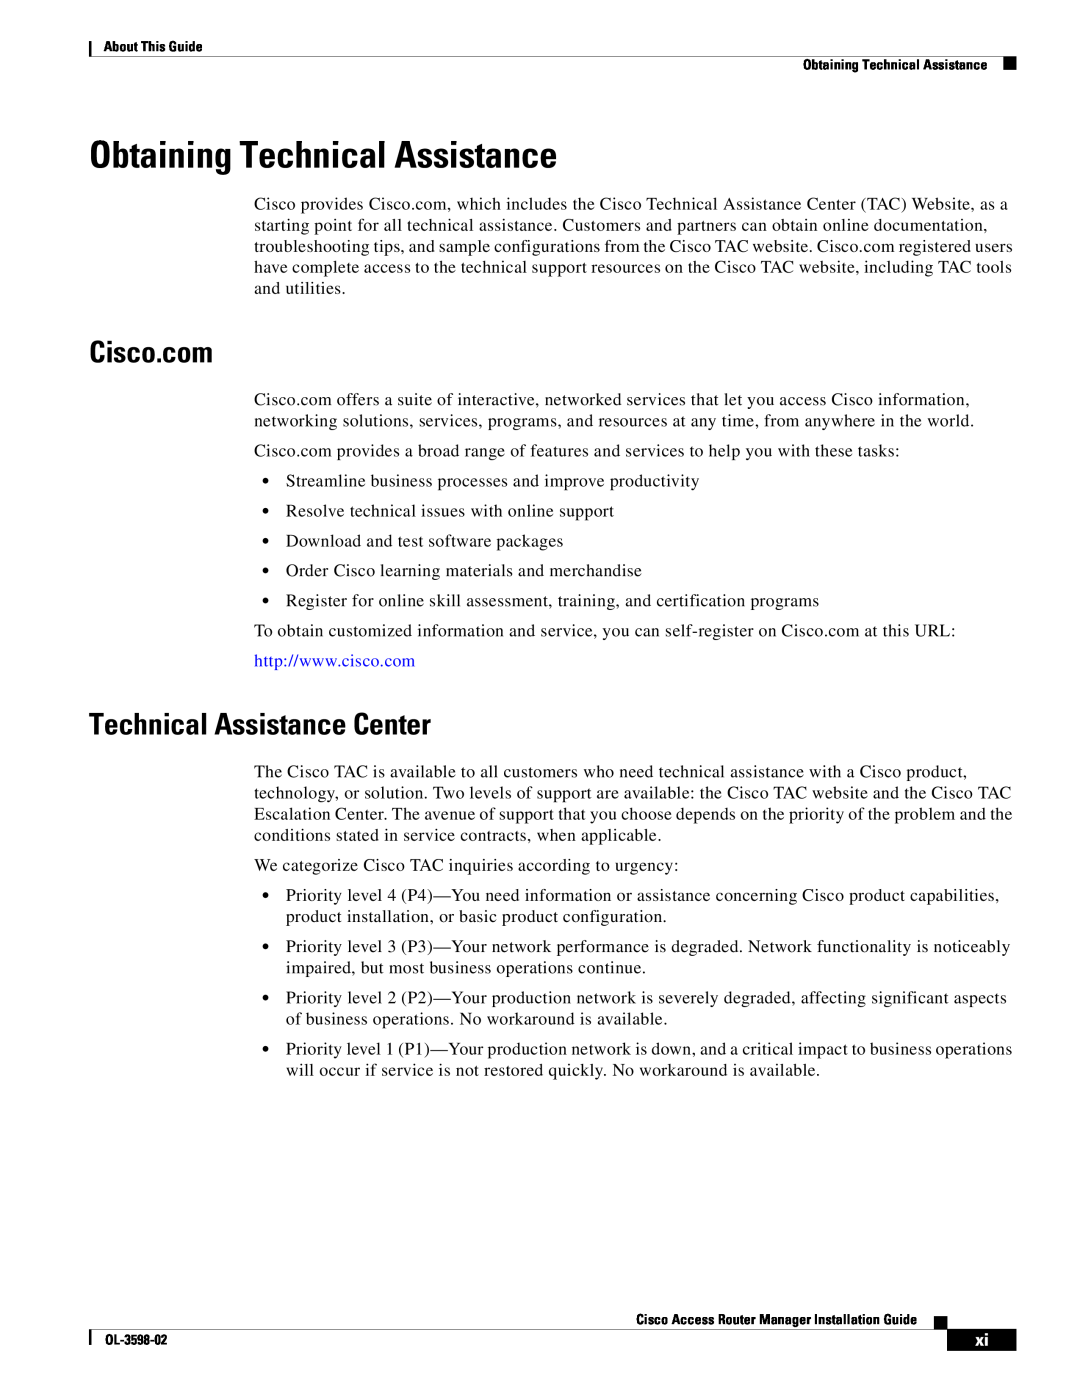 Cisco Systems OL-3598-02 manual Obtaining Technical Assistance, Technical Assistance Center, Cisco.com 